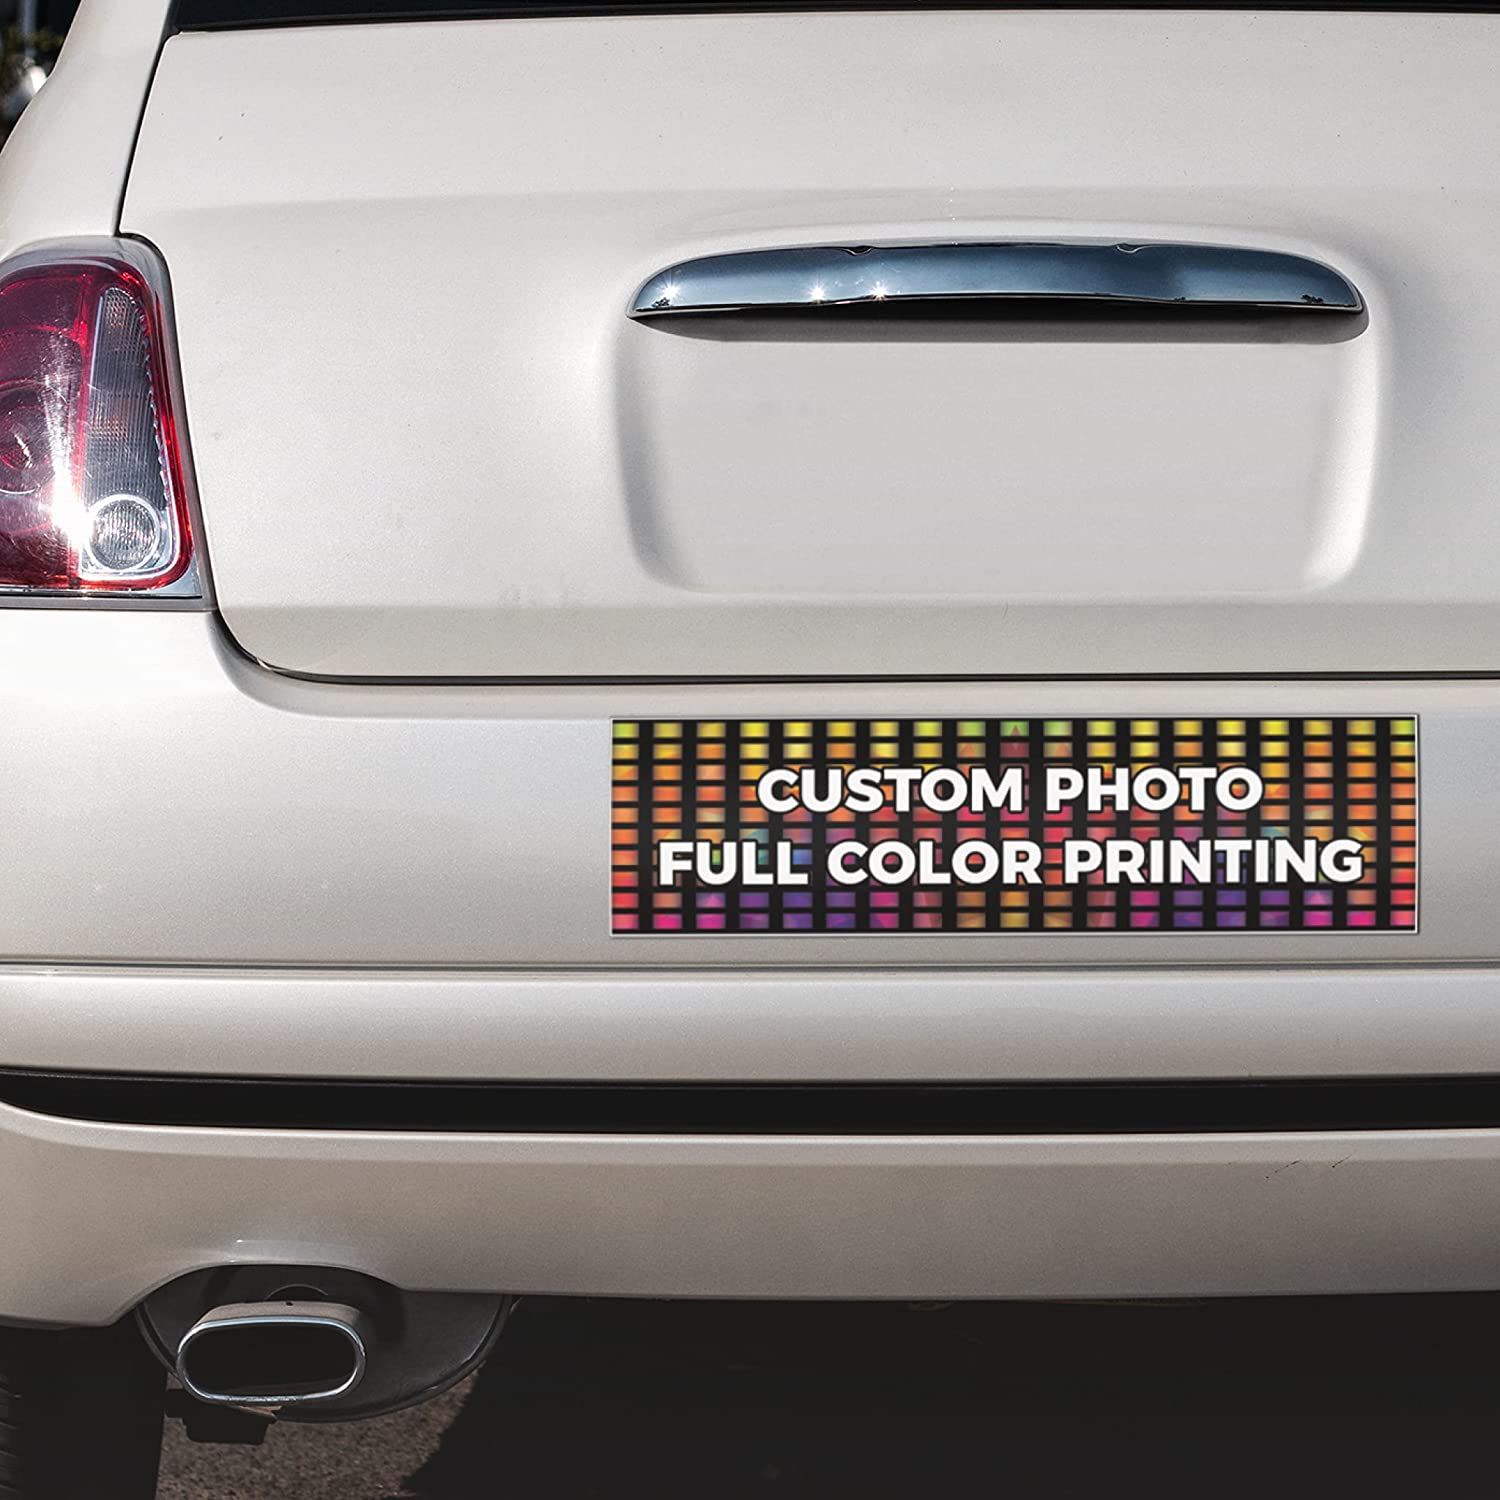 Bumper Stickers - Custom Printing in Vinyl Material